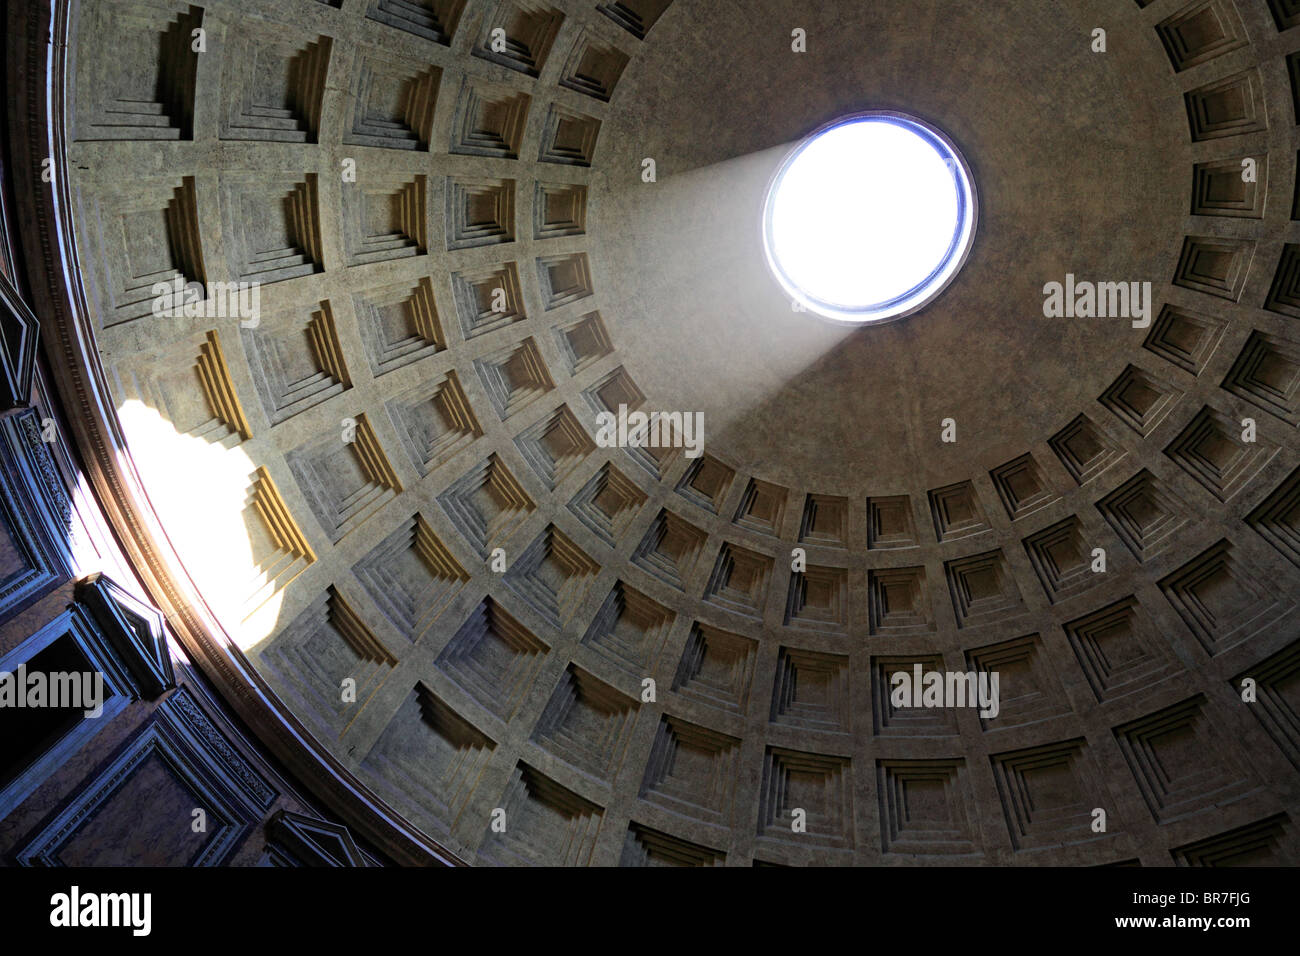 El sol ilumina el interior del techo a través del orificio en la parte superior del Panteón en Roma, Italia Foto de stock